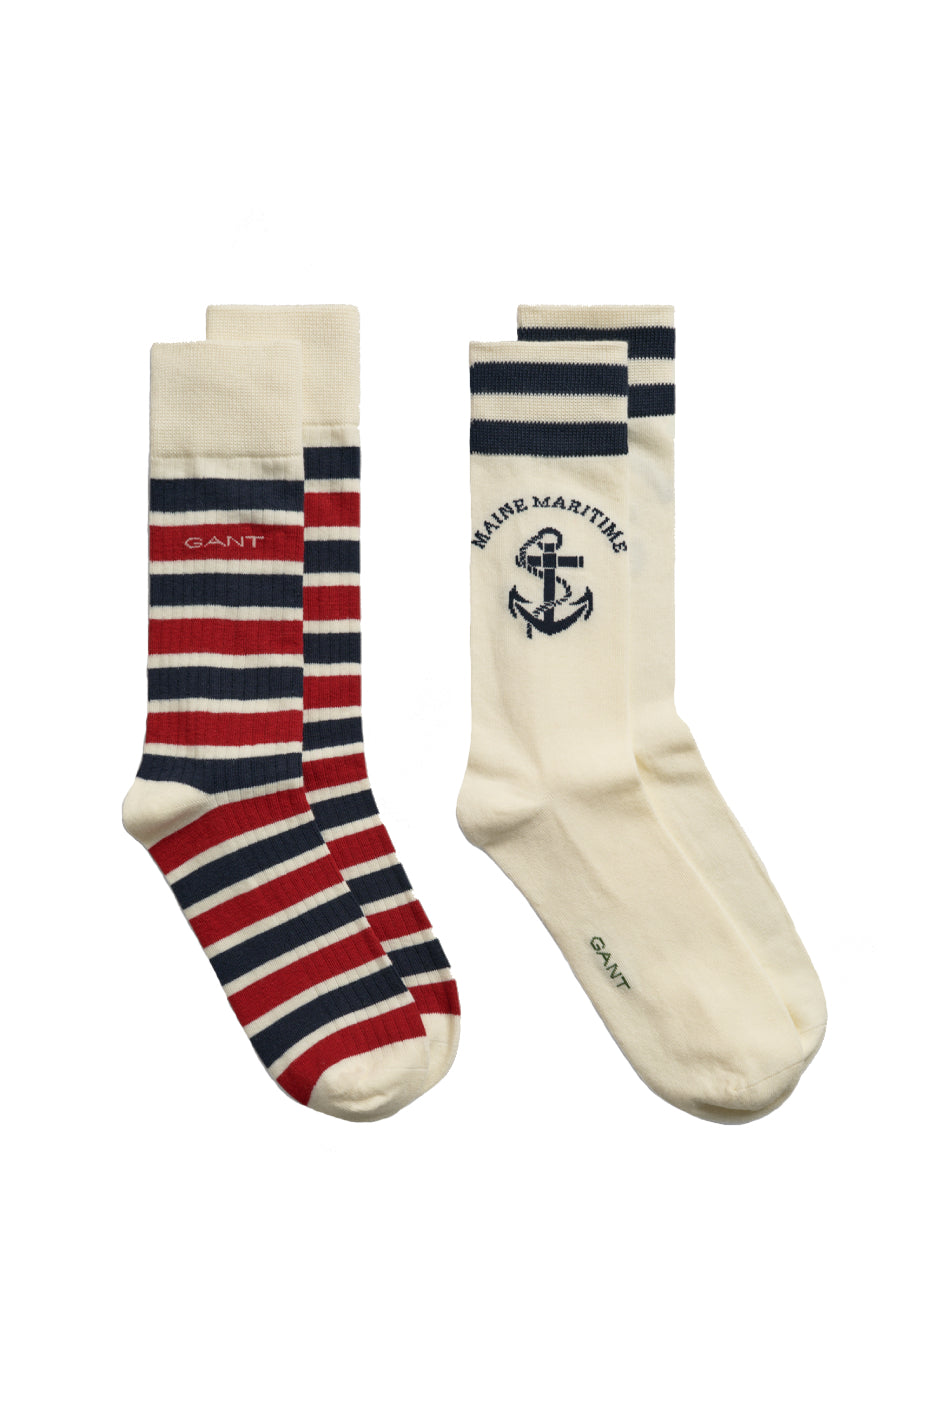 Gant 2 Pack Men's Maritime Socks